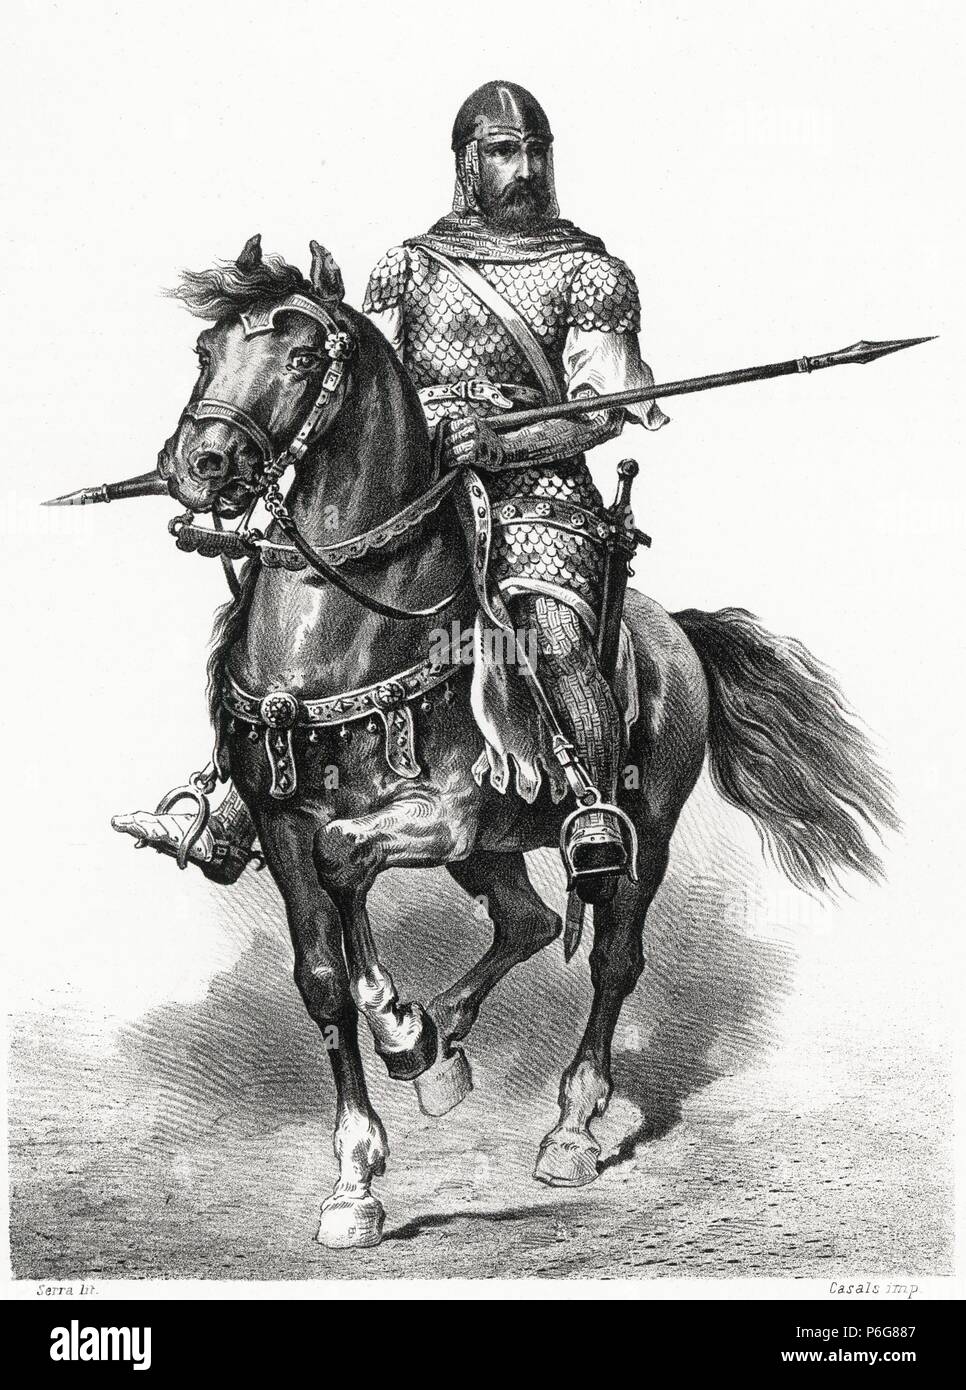 Disco muelle moneda Historia de España. Rodrigo Díaz de Vivar, el Cid Campeador (1048-1099), a  lomos de su caballo Babieca. Grabado de 1872 Stock Photo - Alamy